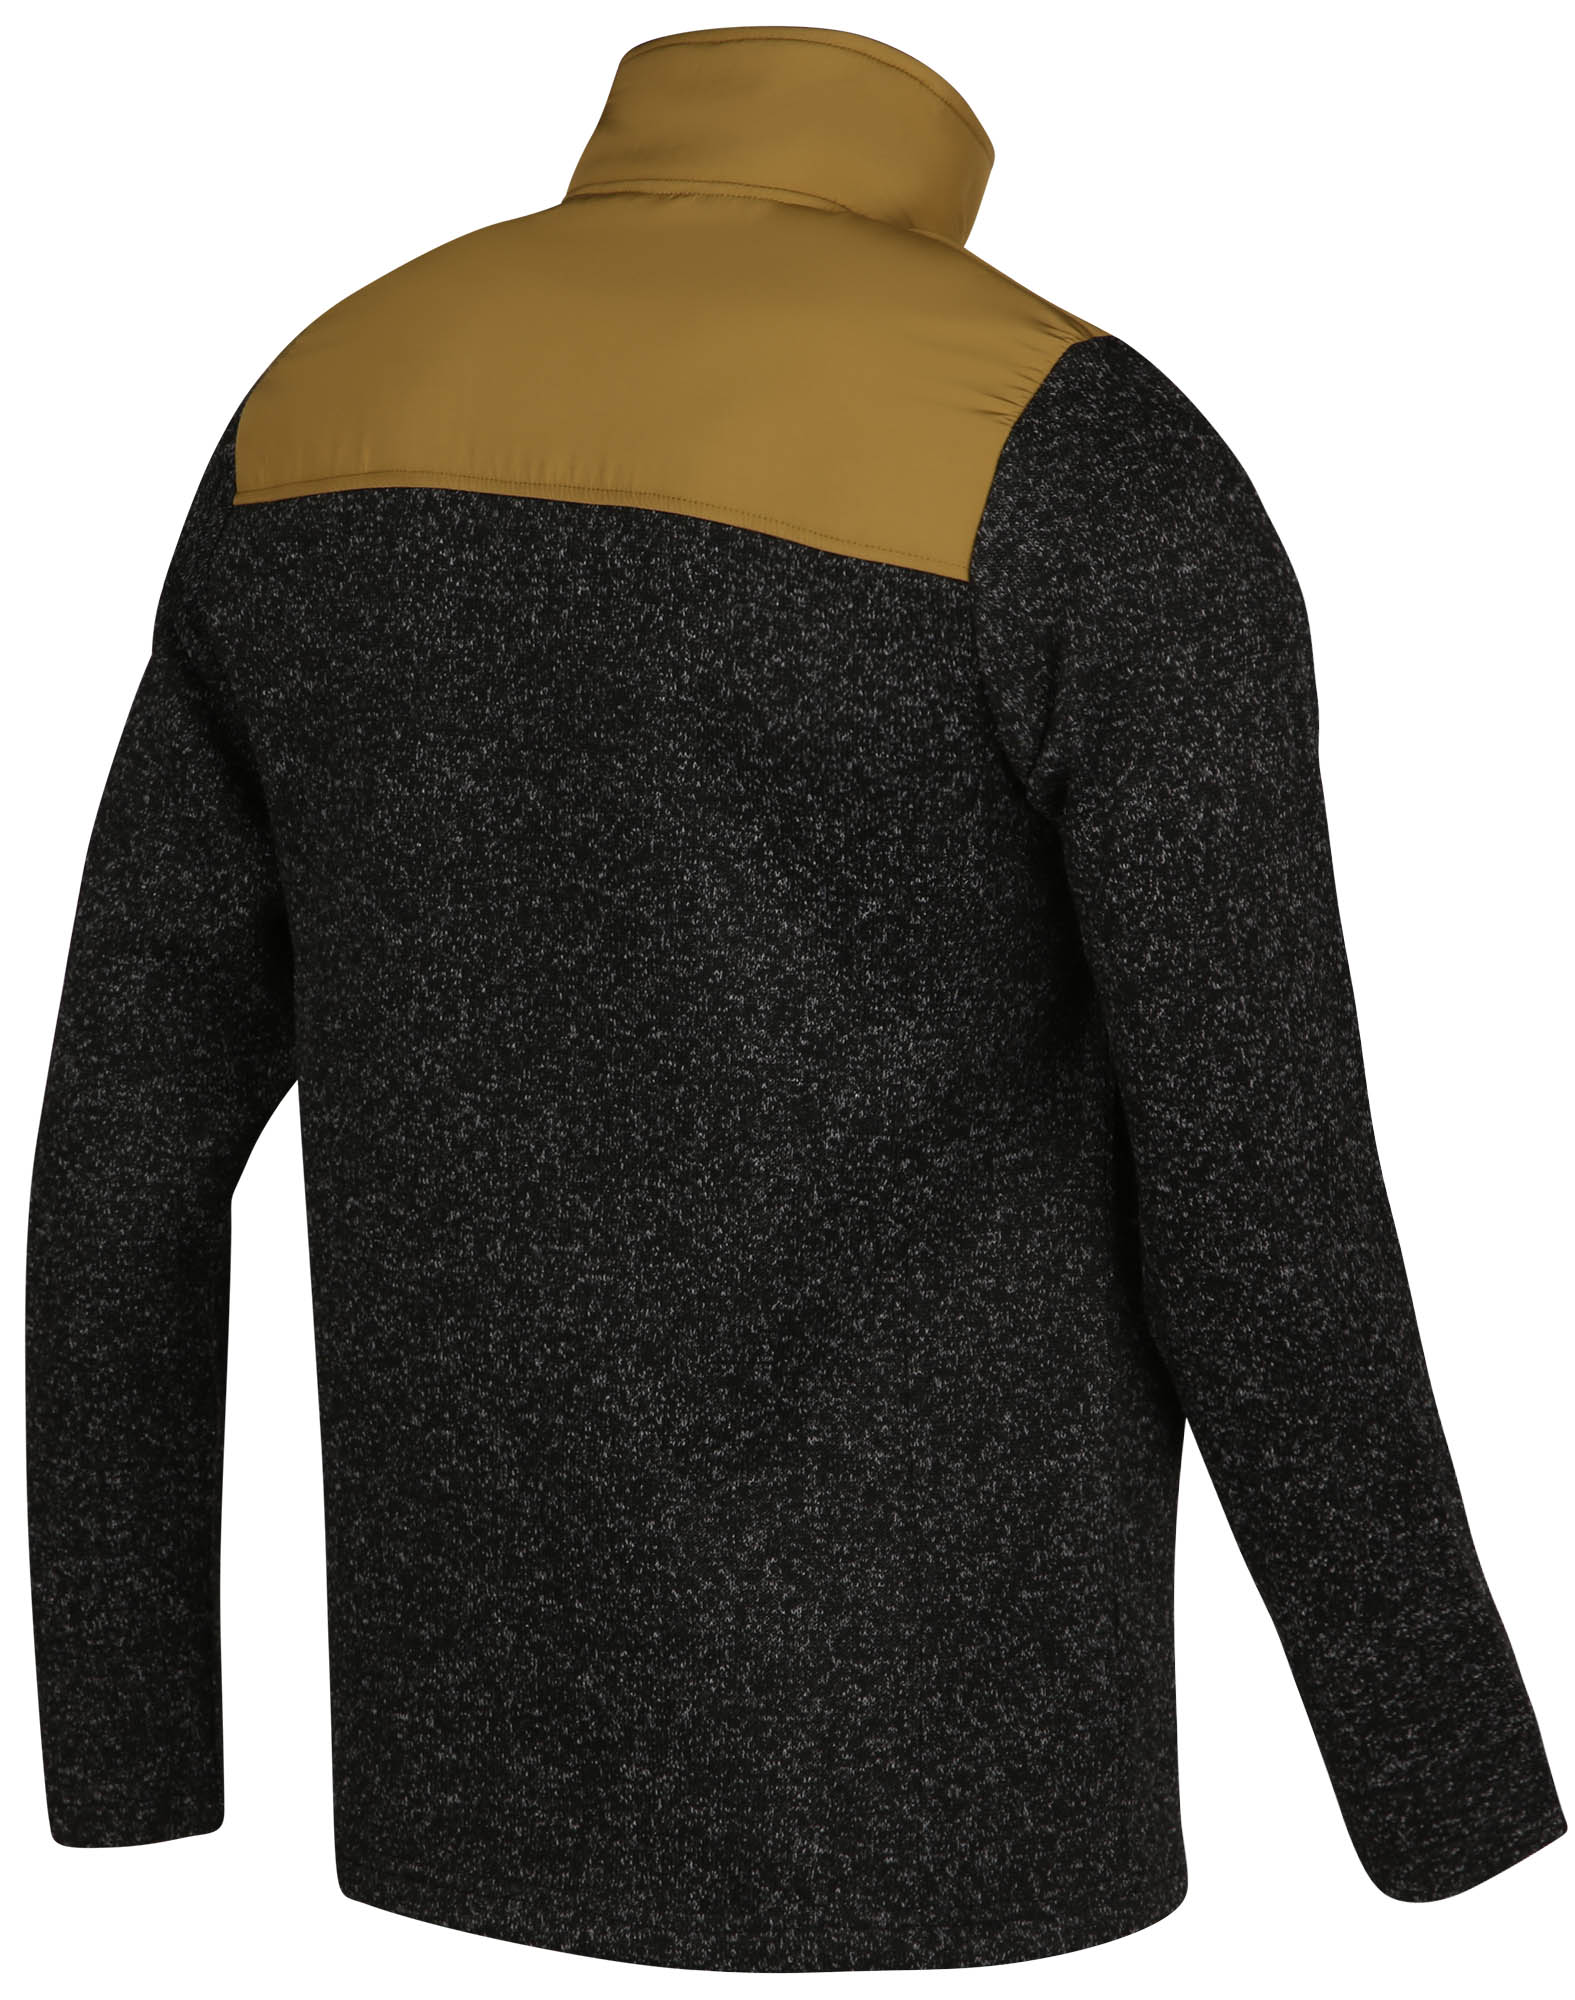 Men’s fleece sweatshirt that looks like a sweater